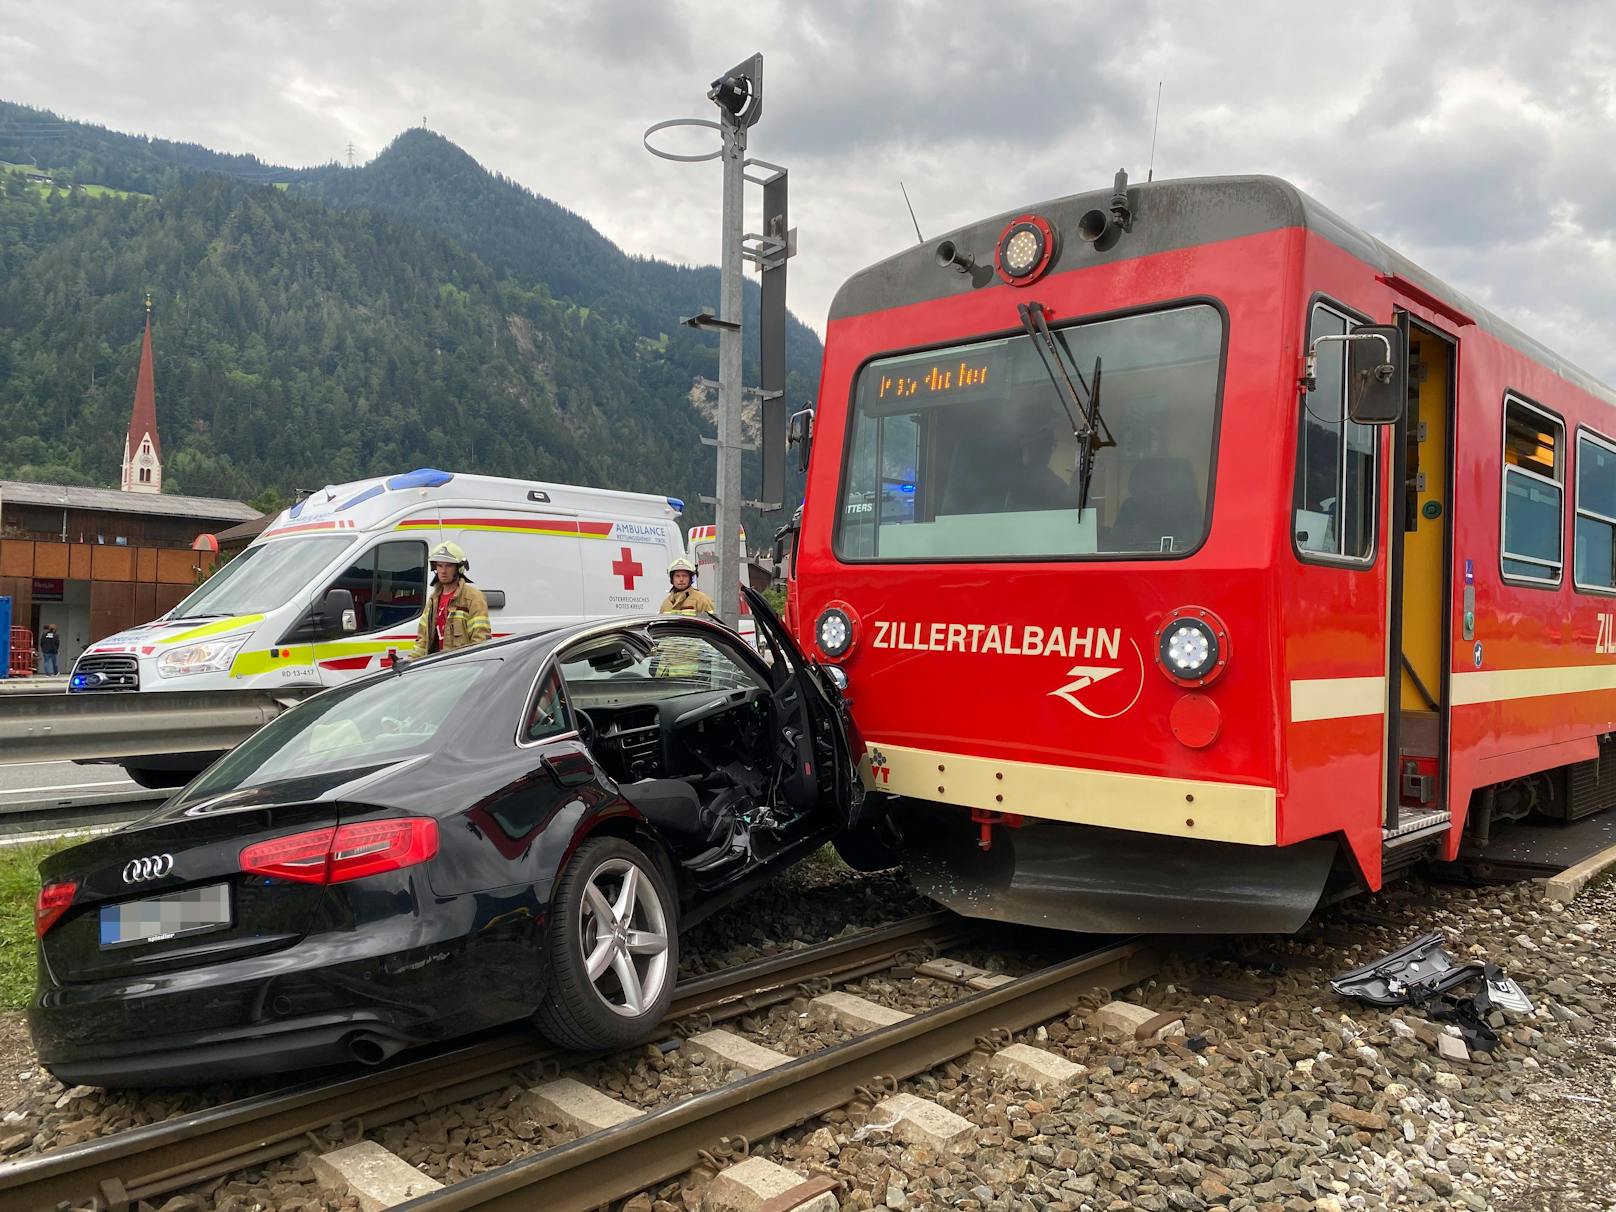 Zillertalbahn erfasst Auto: Zwei Verletzte